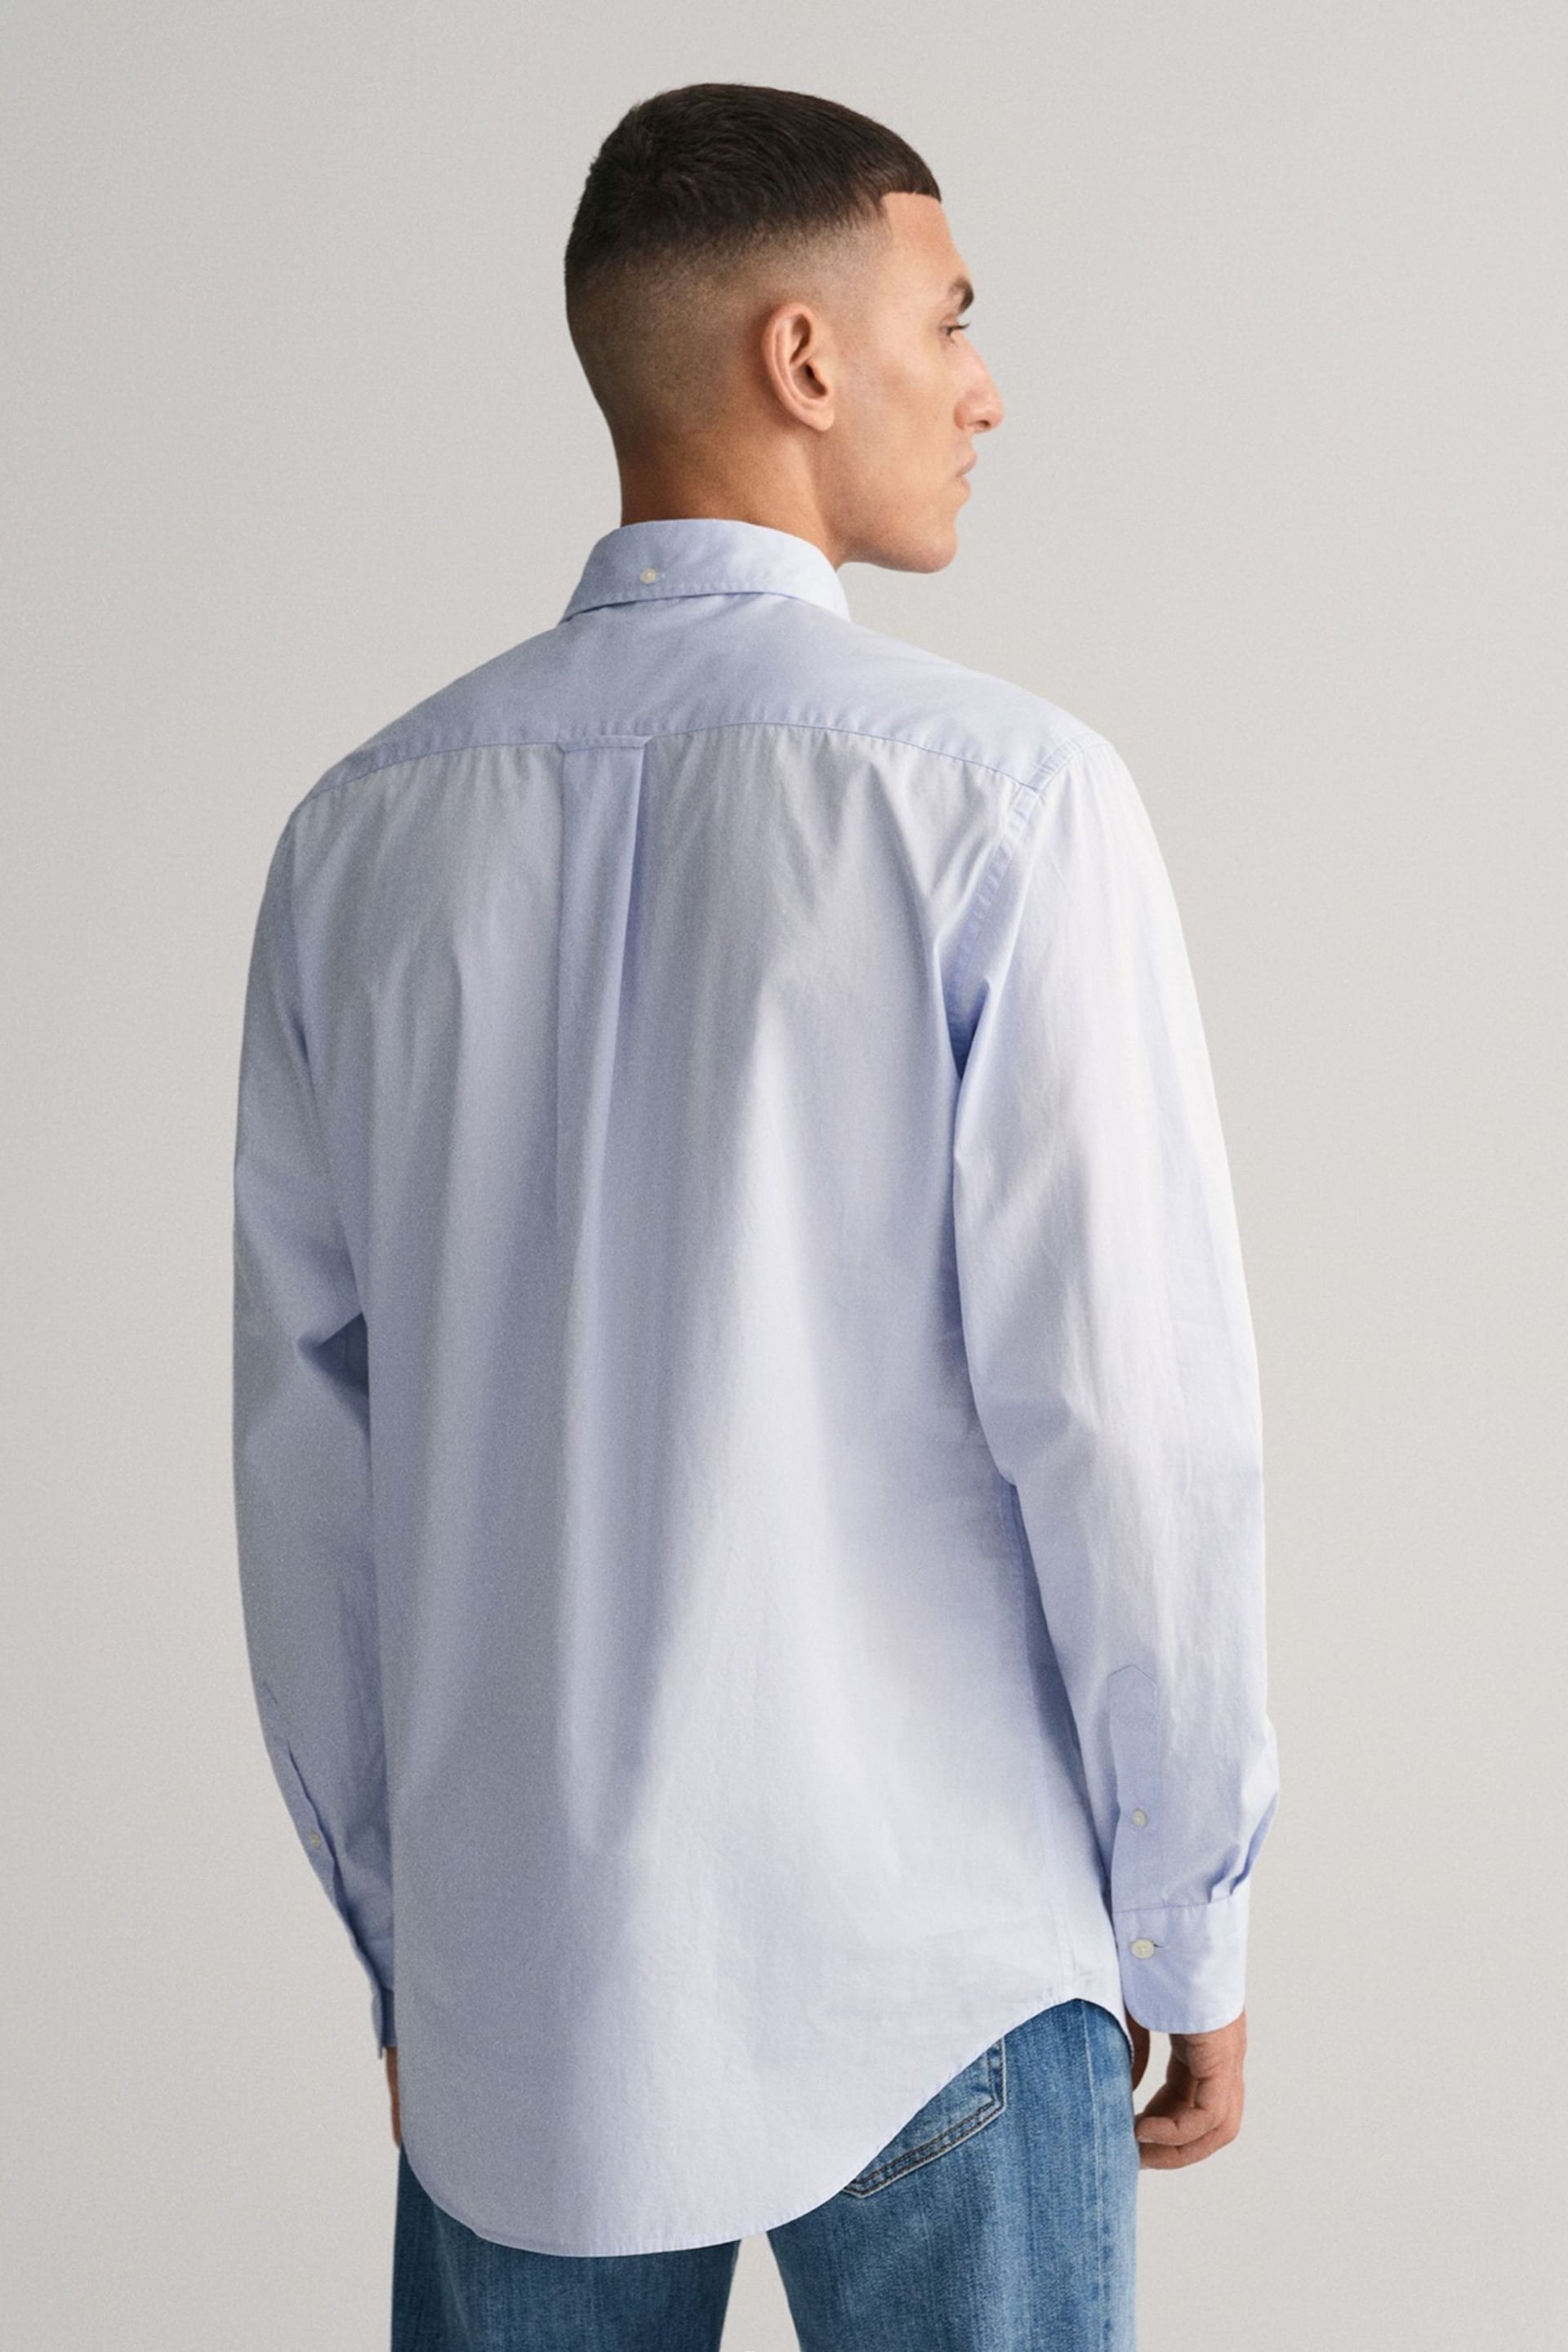 GANT Light Blue Regular Fit Poplin Shirt - Image 2 of 5